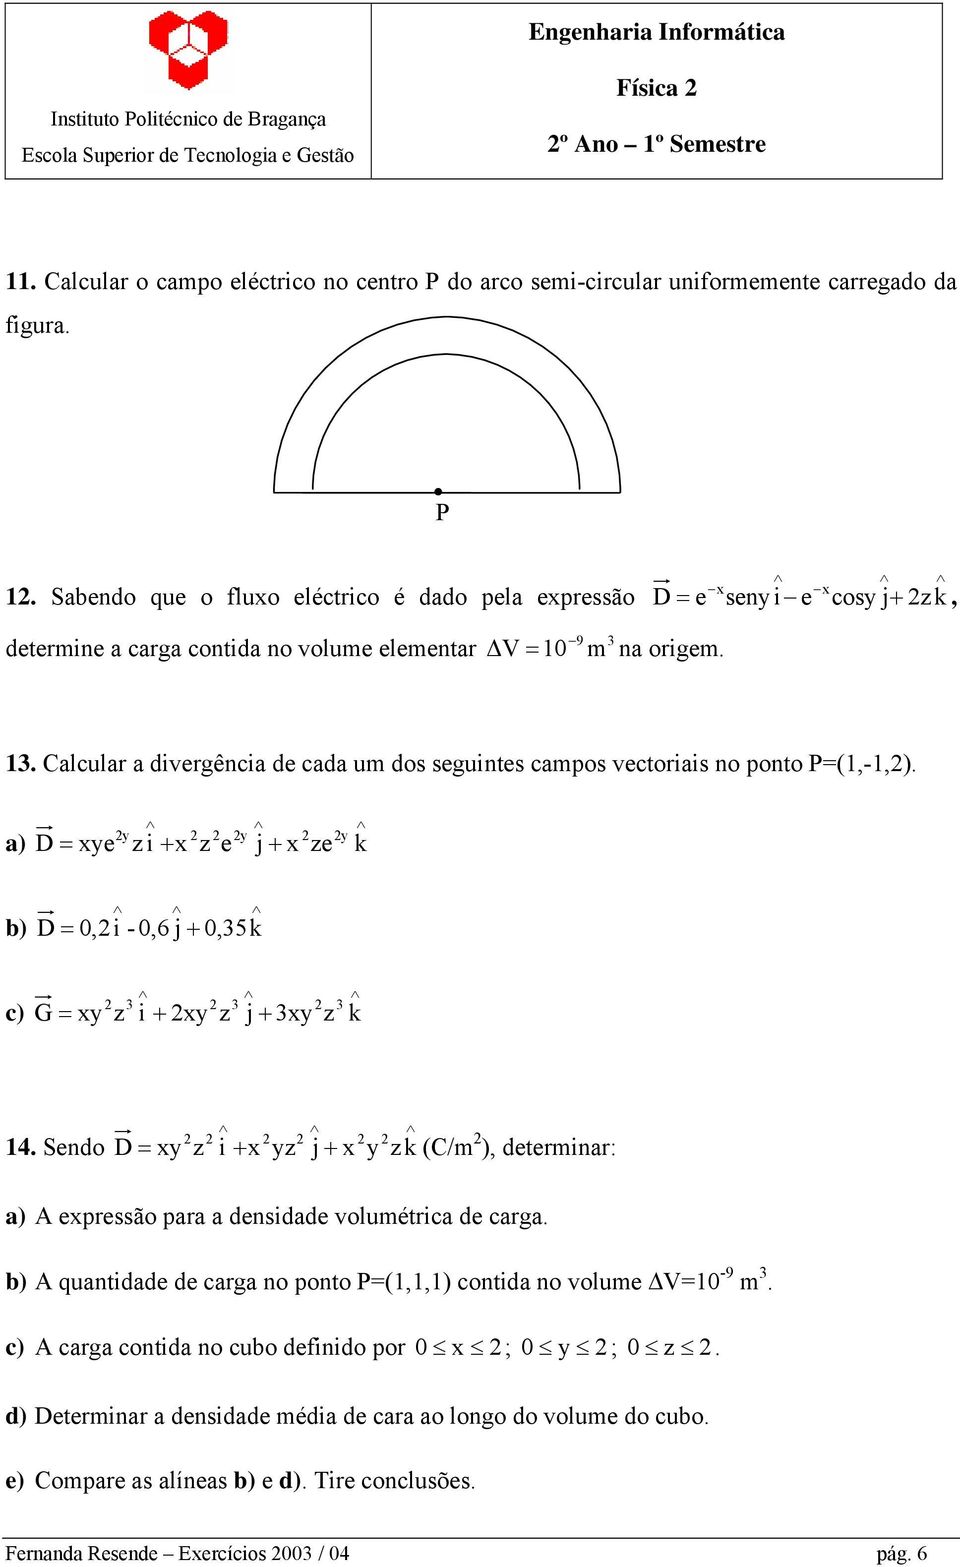 Calcular a divergência de cada um dos seguintes campos vectoriais no ponto P=(1,-1,2).